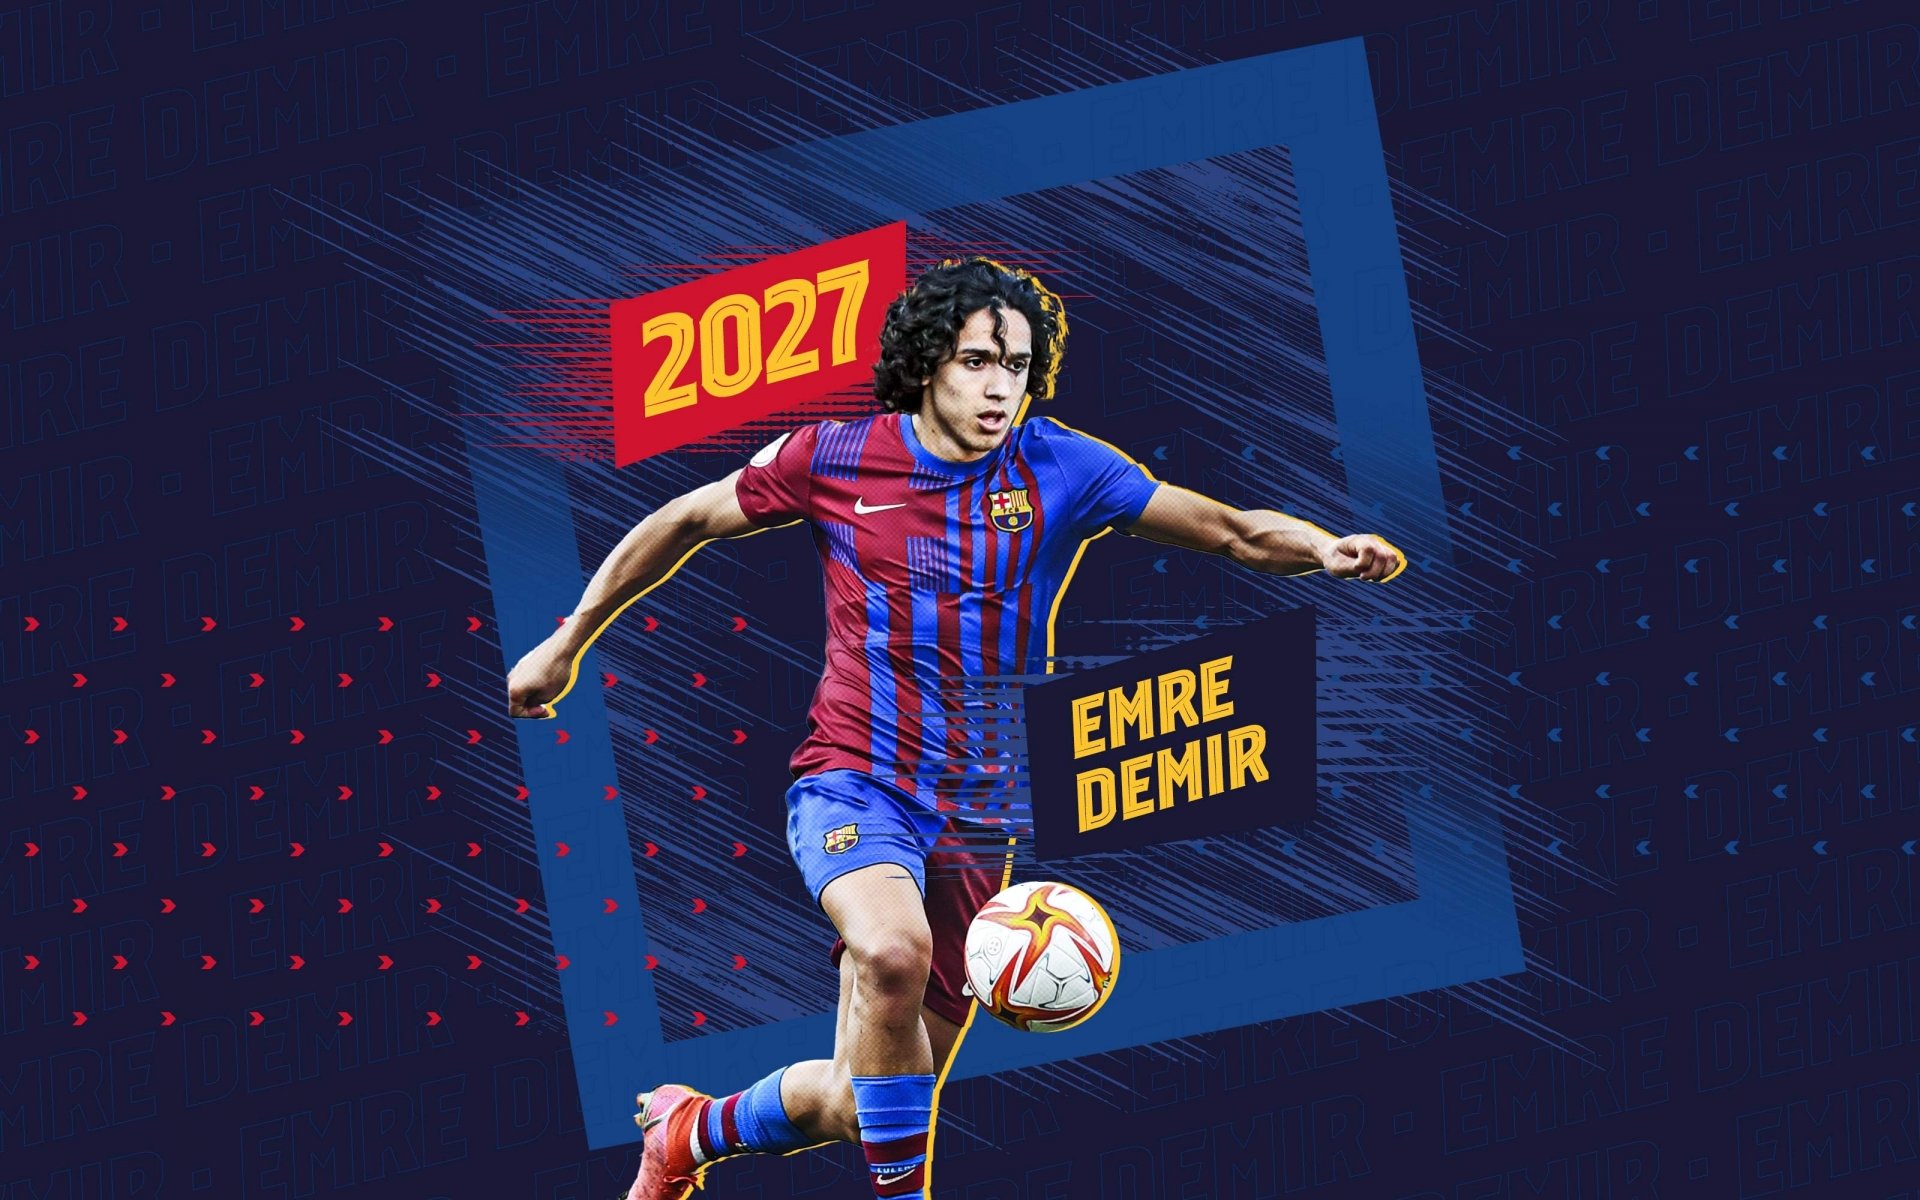 CLB Barca đã ký hợp đồng với cầu thủ trẻ Emre Demir